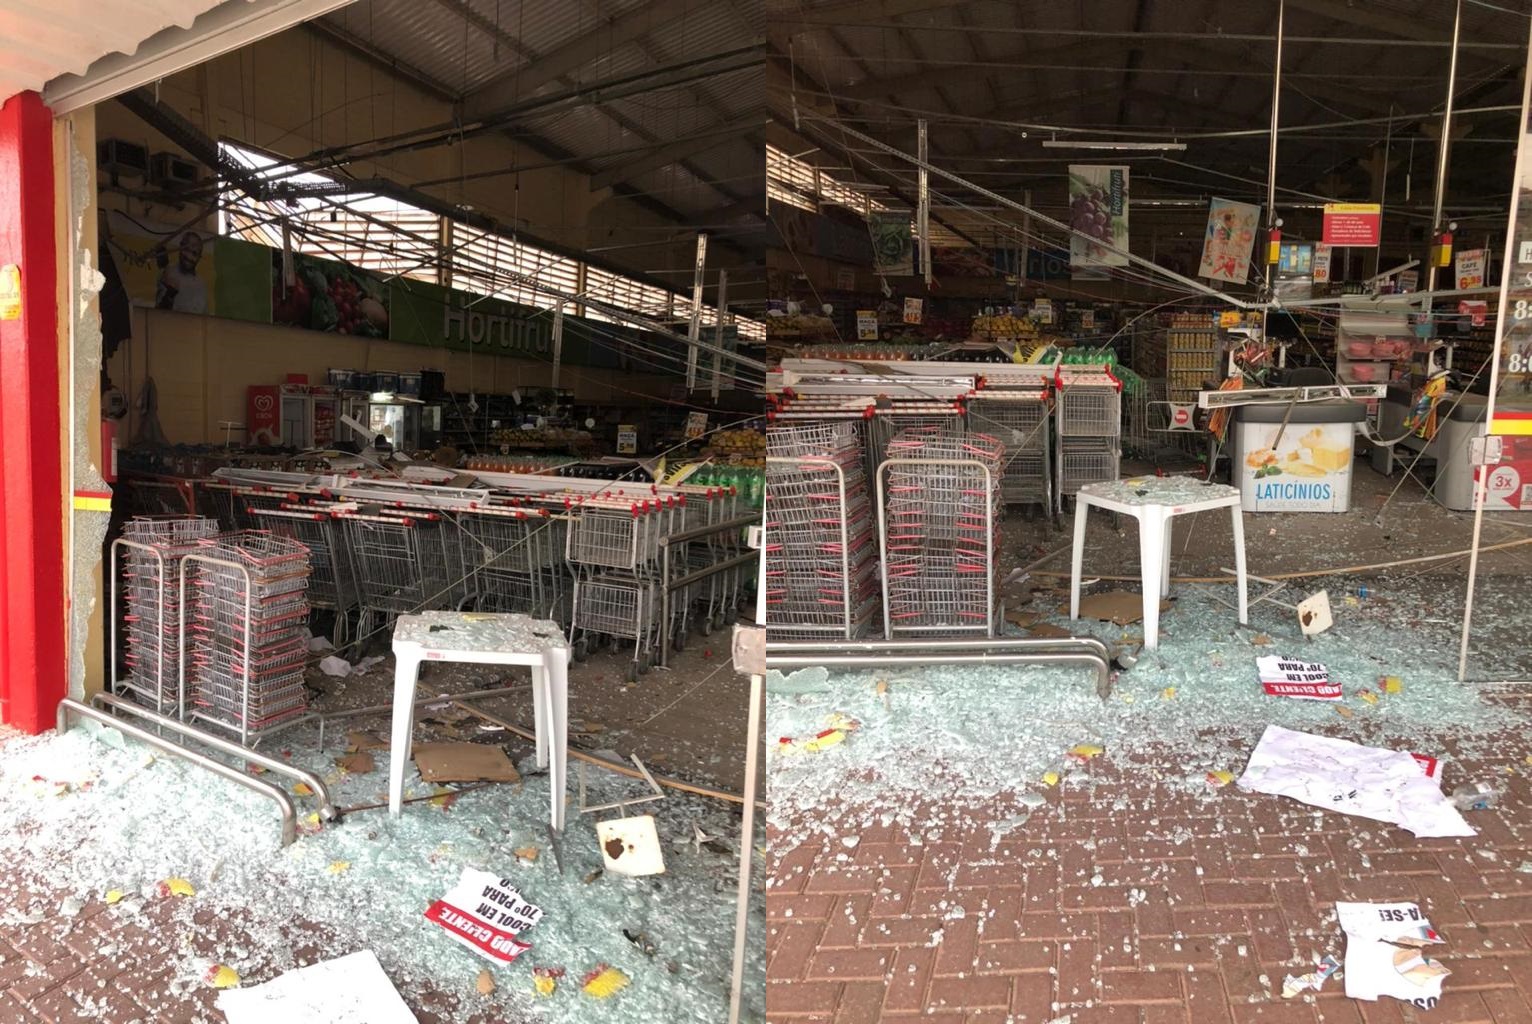 Tentativa de furto: Bandidos voltam a explodir loja do supermercados EPA em Itaúna, mas não levam dinheiro